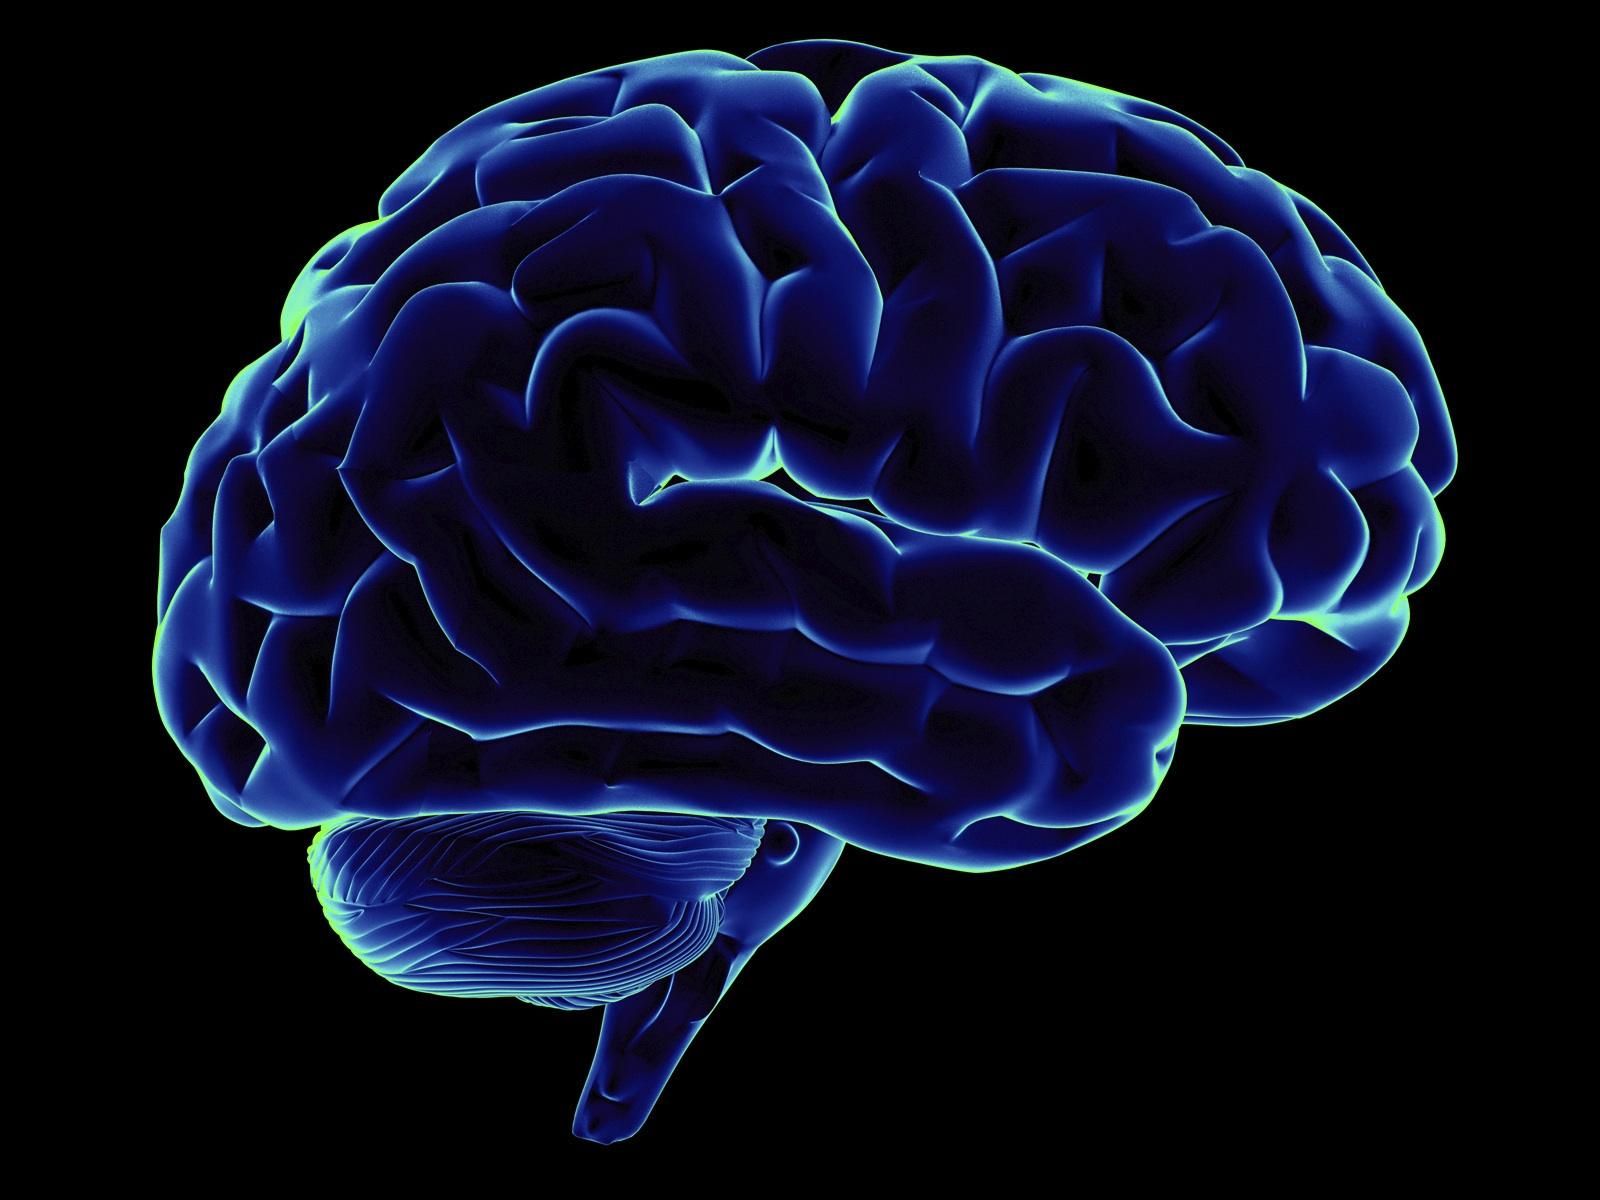 До якого віку мозок продукує нейрони: вчені